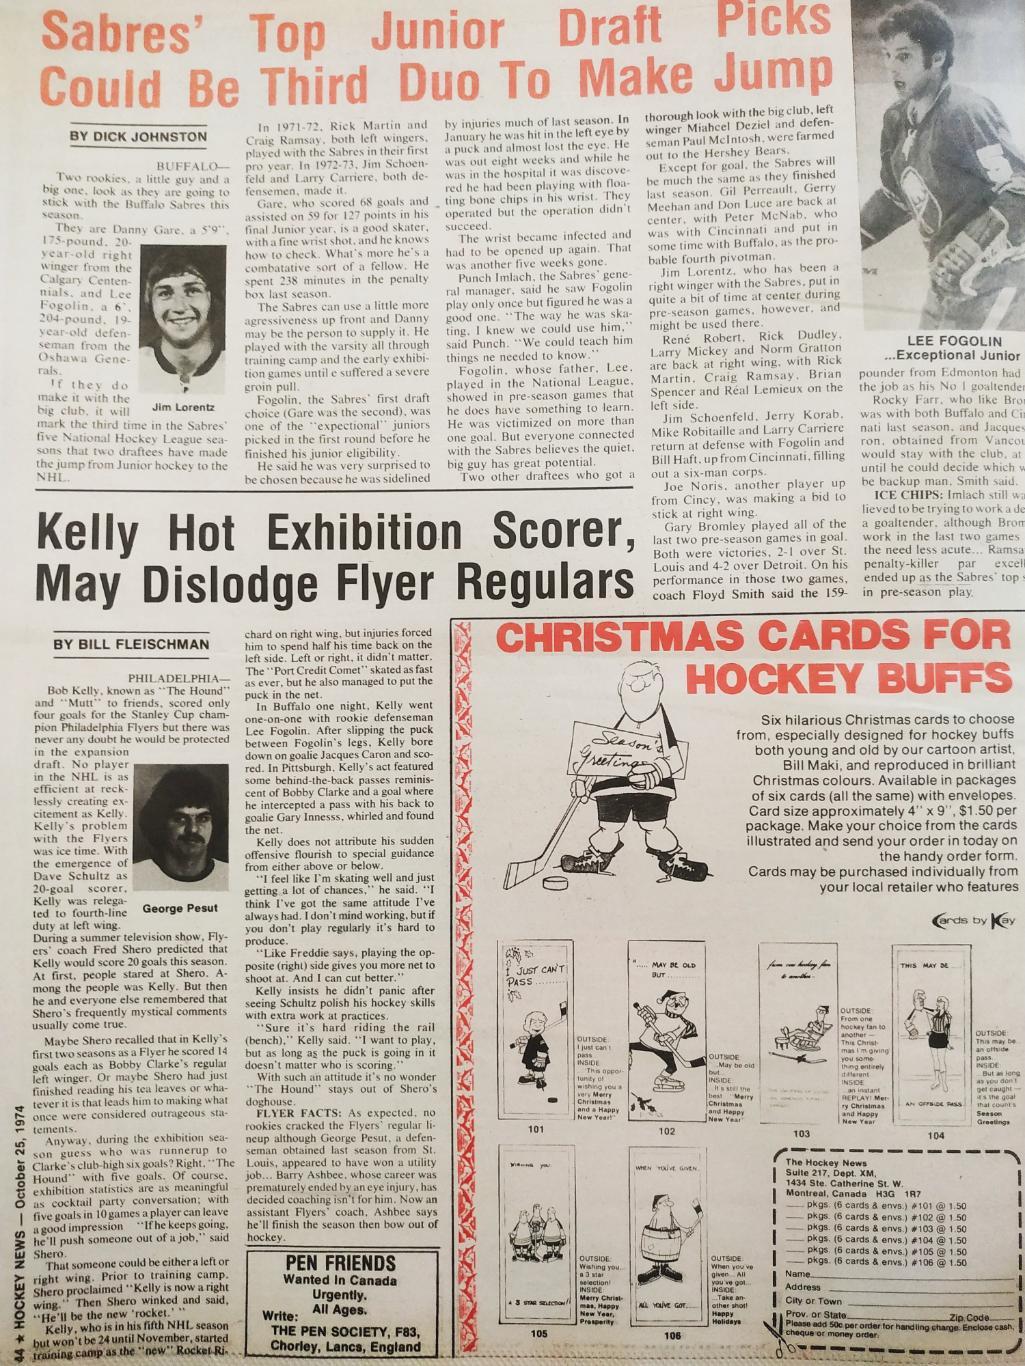 ХОККЕЙ ЖУРНАЛ ЕЖЕНЕДЕЛЬНИК НХЛ НОВОСТИ ХОККЕЯ OCT.25 1974 NHL THE HOCKEY NEWS 6